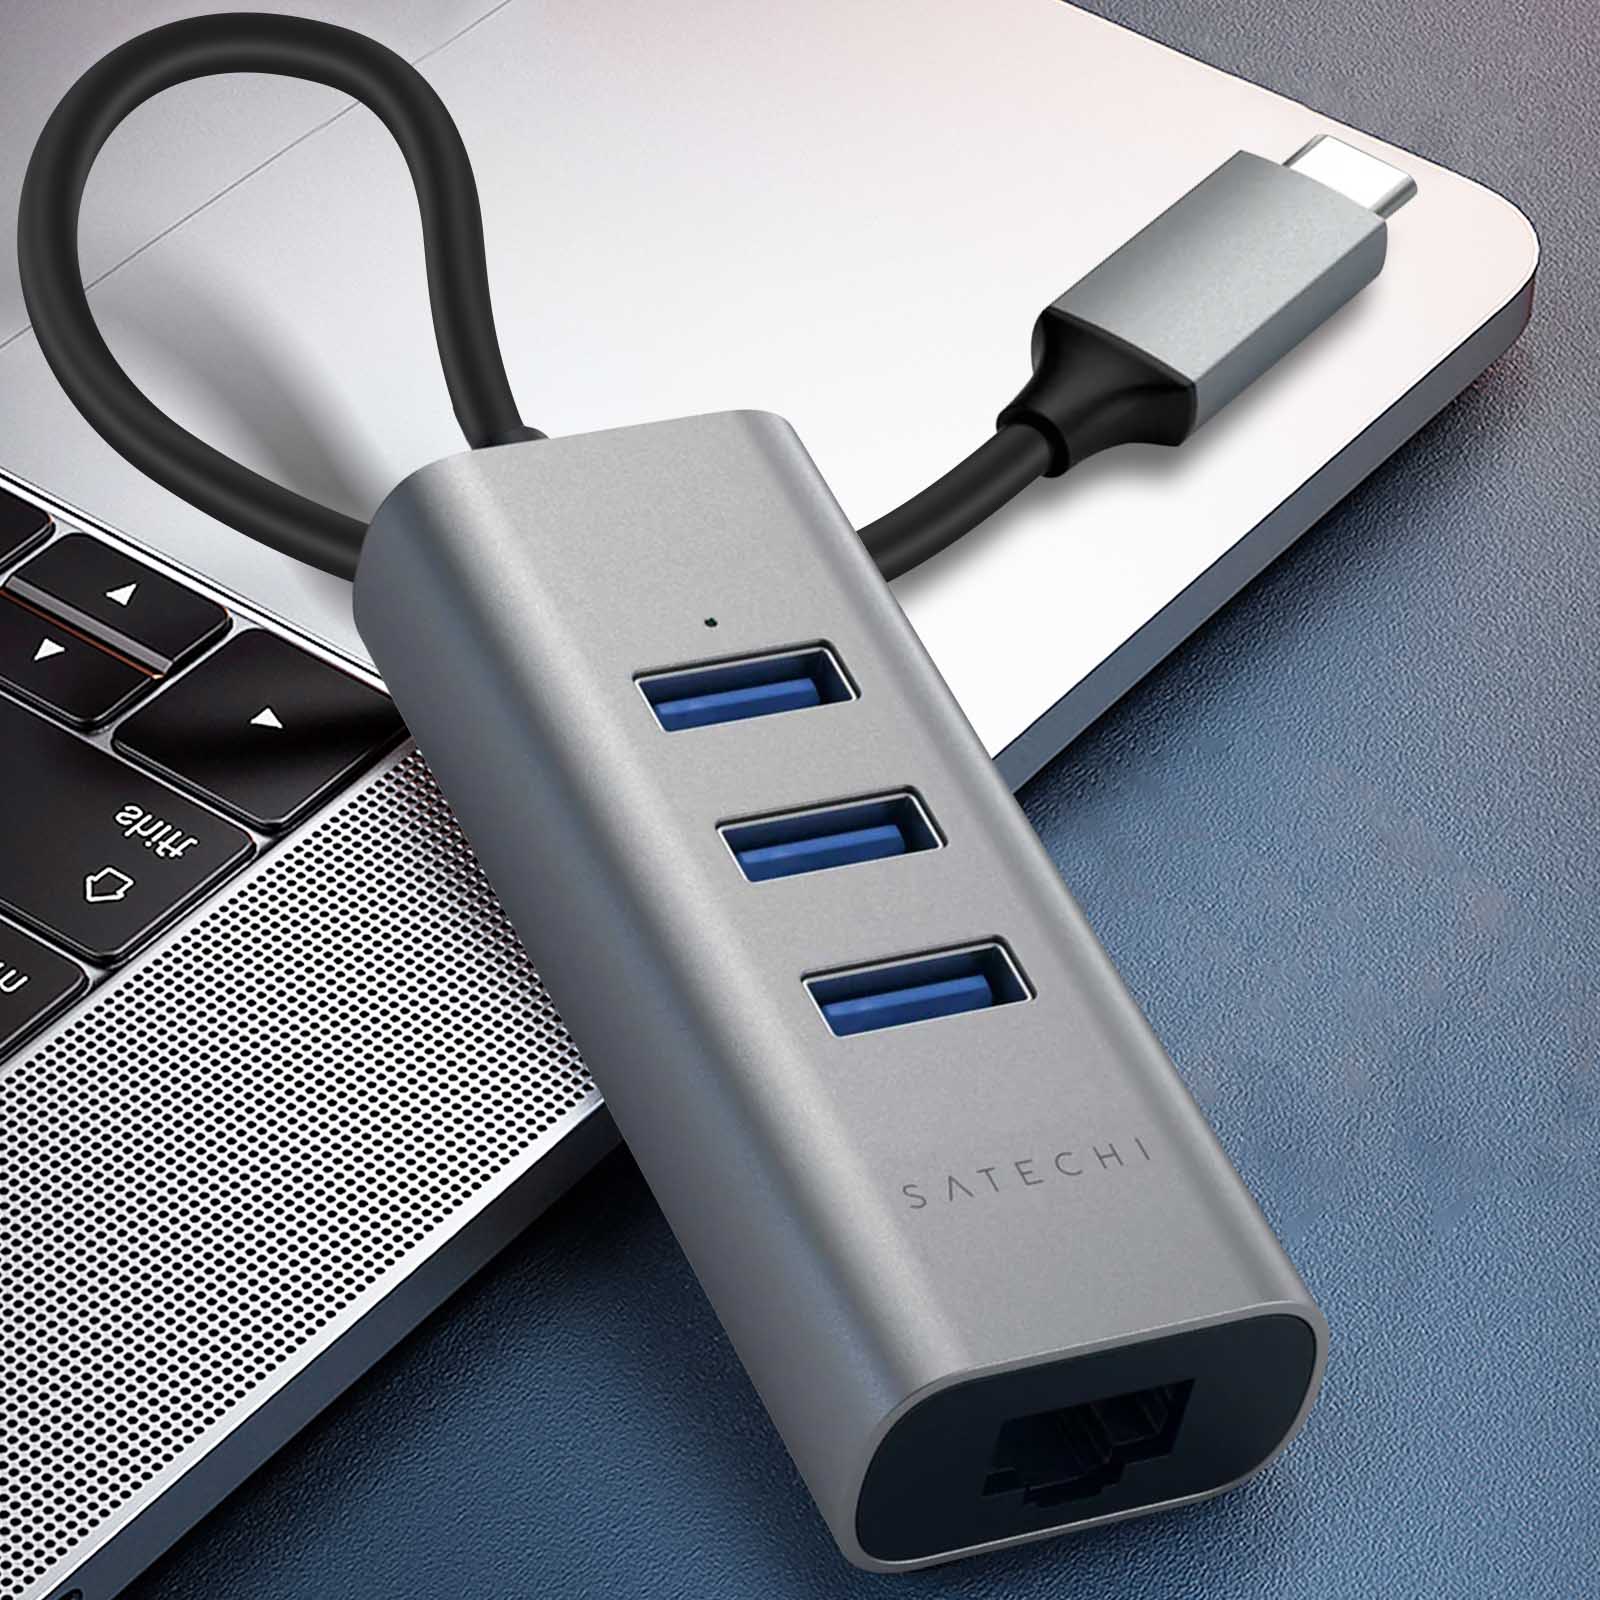 Adaptateur USB vers USB C Satechi, Charge et Synchronisation de Données 5  Gbps - Gris - Français